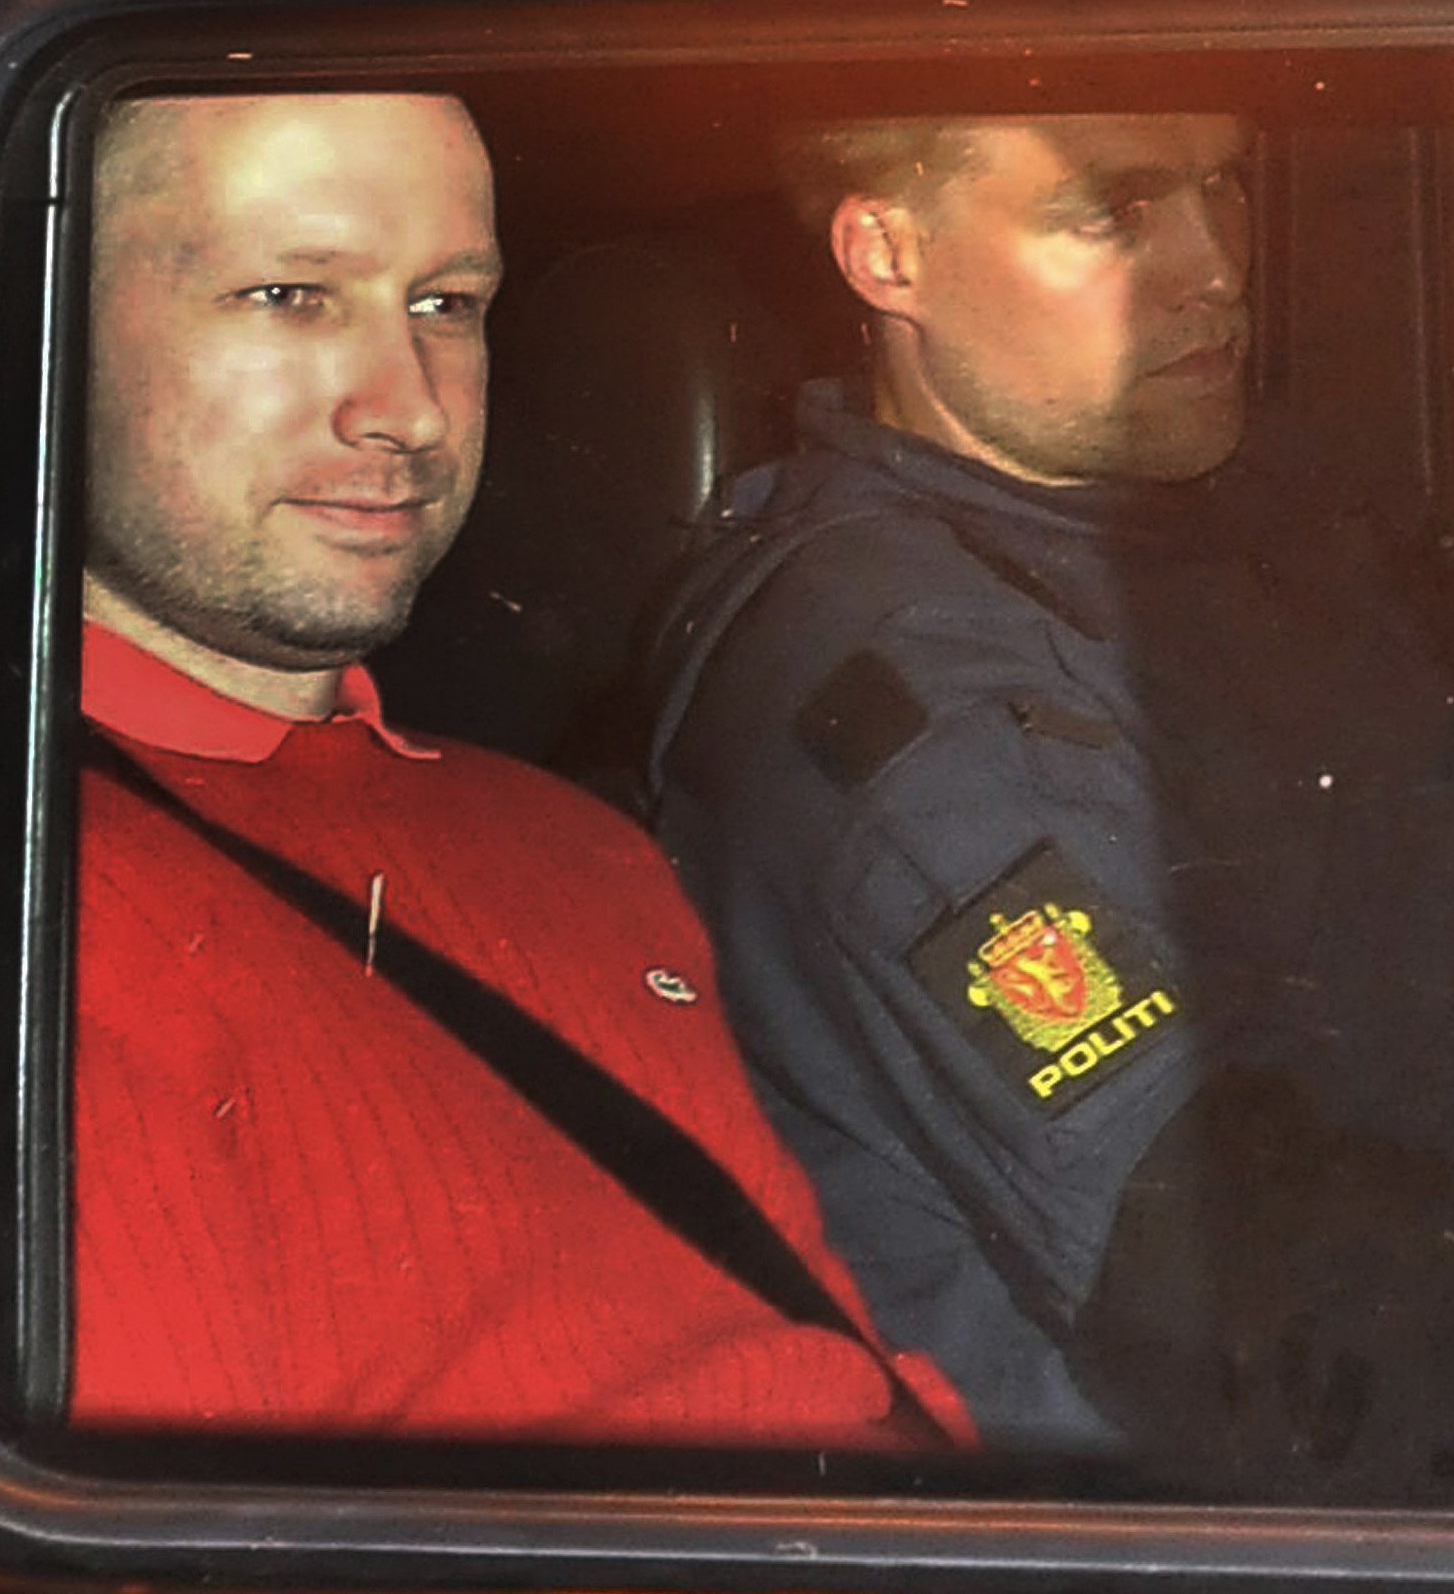 Terrordåd, Oslo, Häktningsförhandling, Utøya, Anders Behring Breivik, Norge, Bombattentat